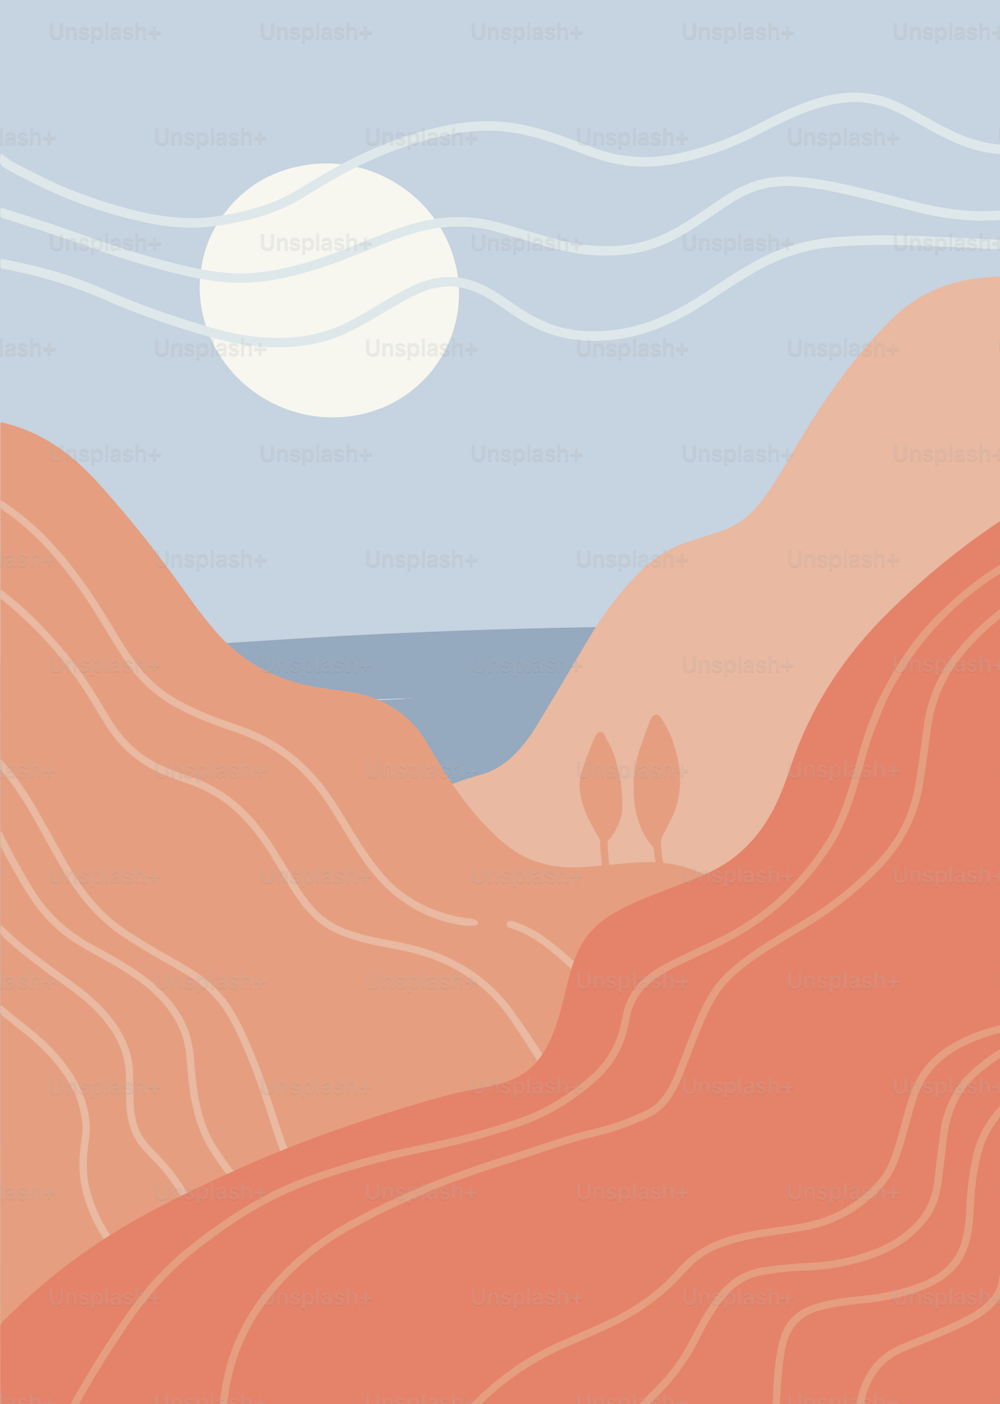 Paesaggio artistico astratto minimalista. Panorama delle montagne, del mare e del caldo sole bianco. Grafica vettoriale piatta disegnata a mano